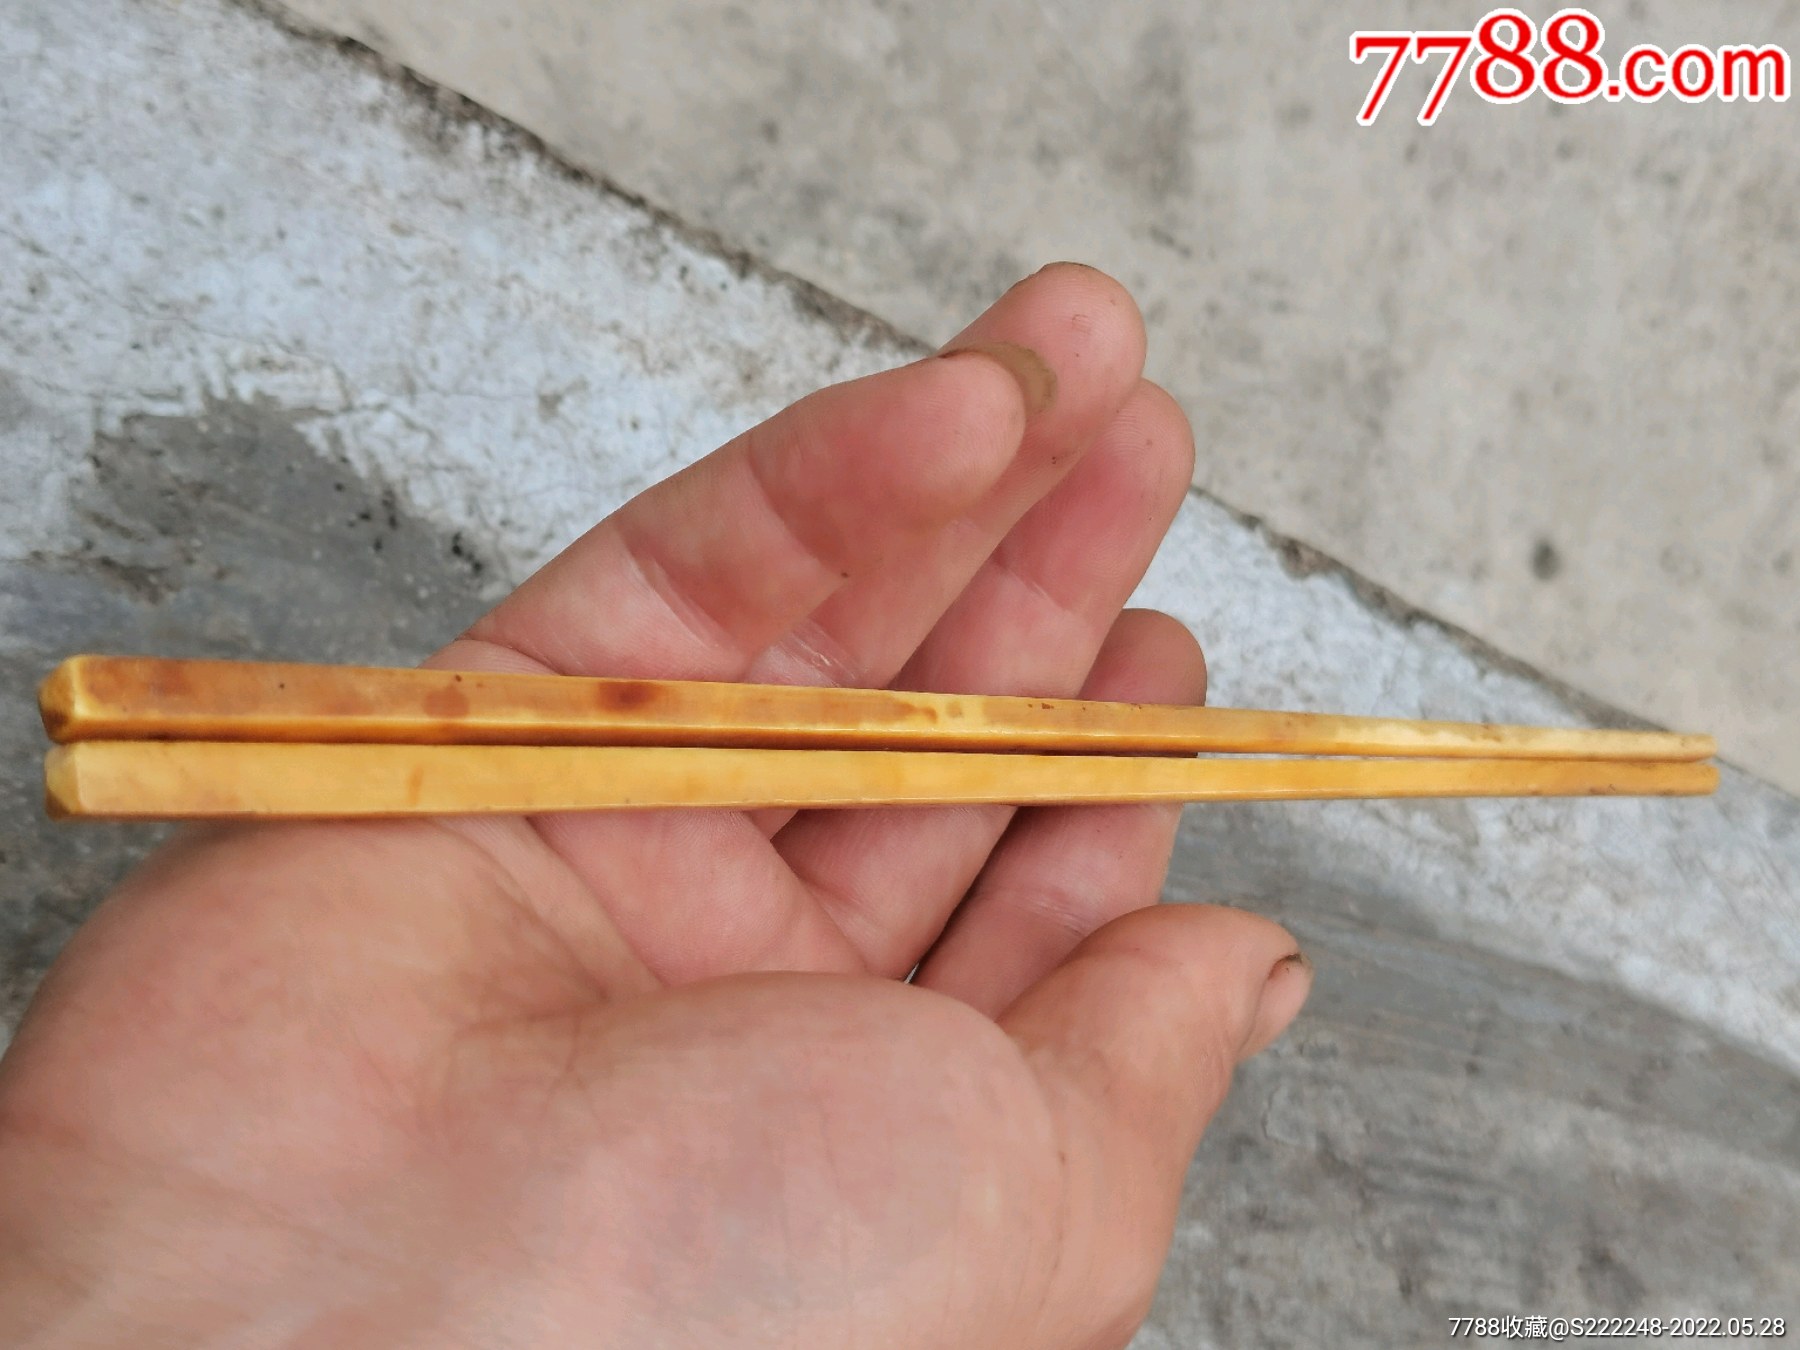 象牙筷图片